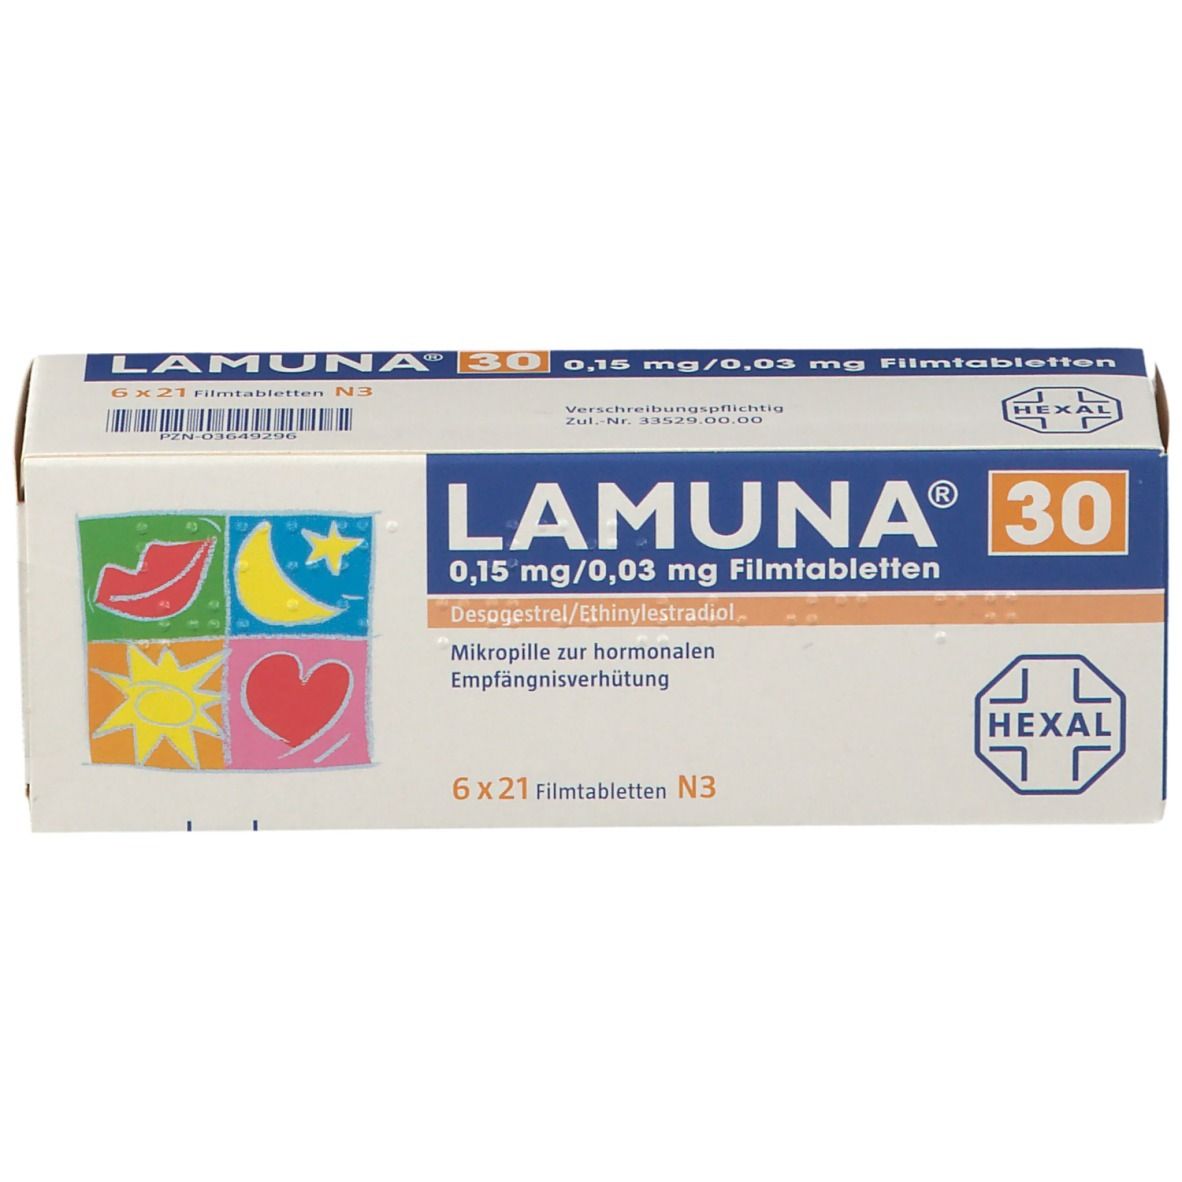 LAMUNA® 30